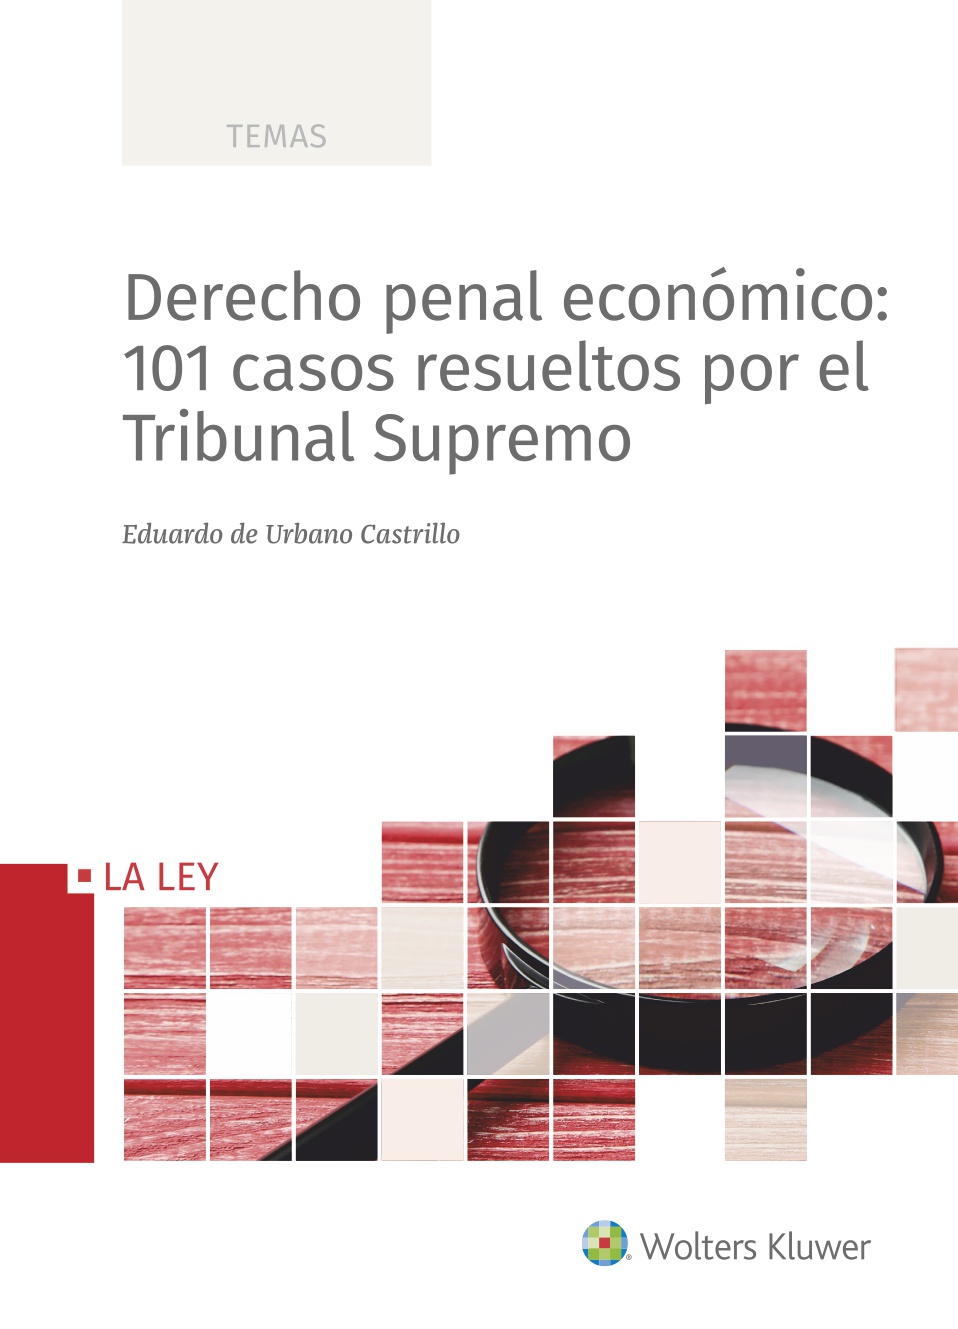 DERECHO PENAL ECONOMICO 101 CASOS RESUELTOS POR EL TRIBUNAL SUPREMO